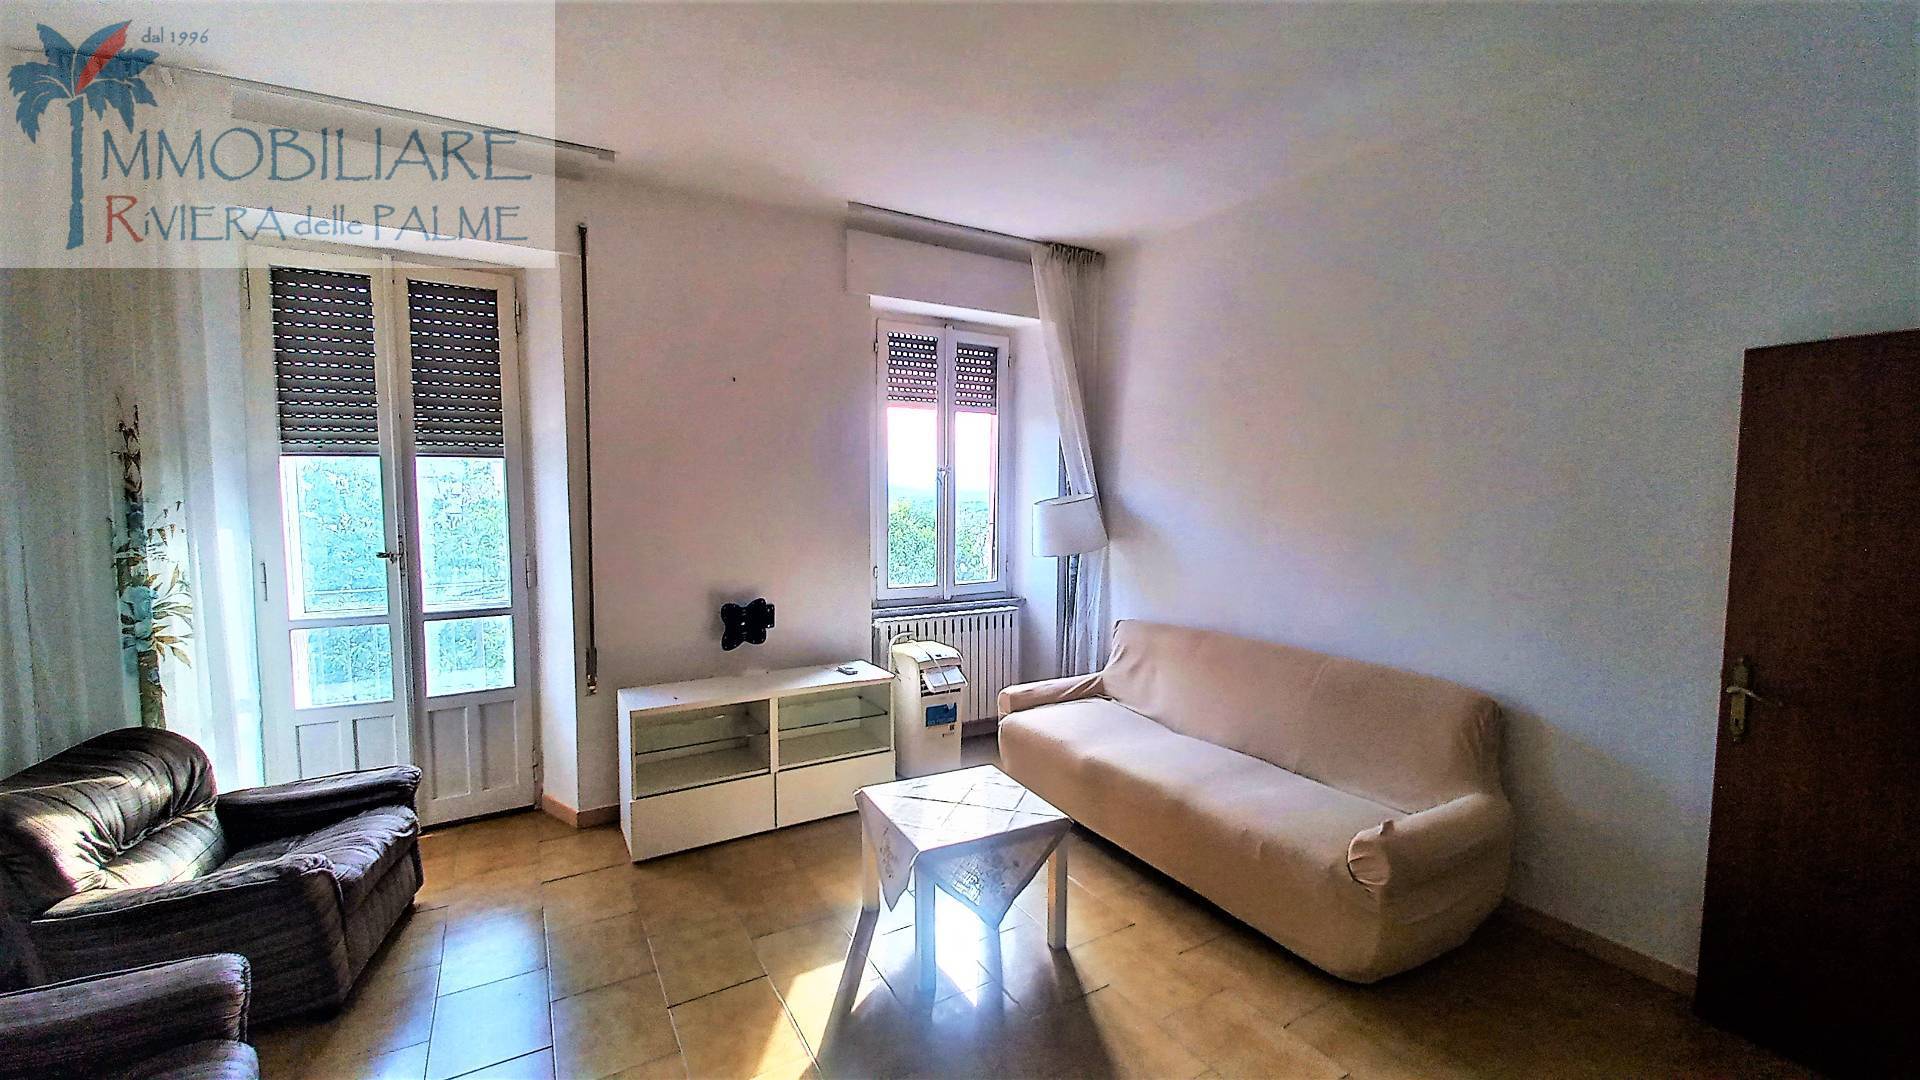 Appartamento in vendita a Fermo, 6 locali, prezzo € 170.000 | PortaleAgenzieImmobiliari.it